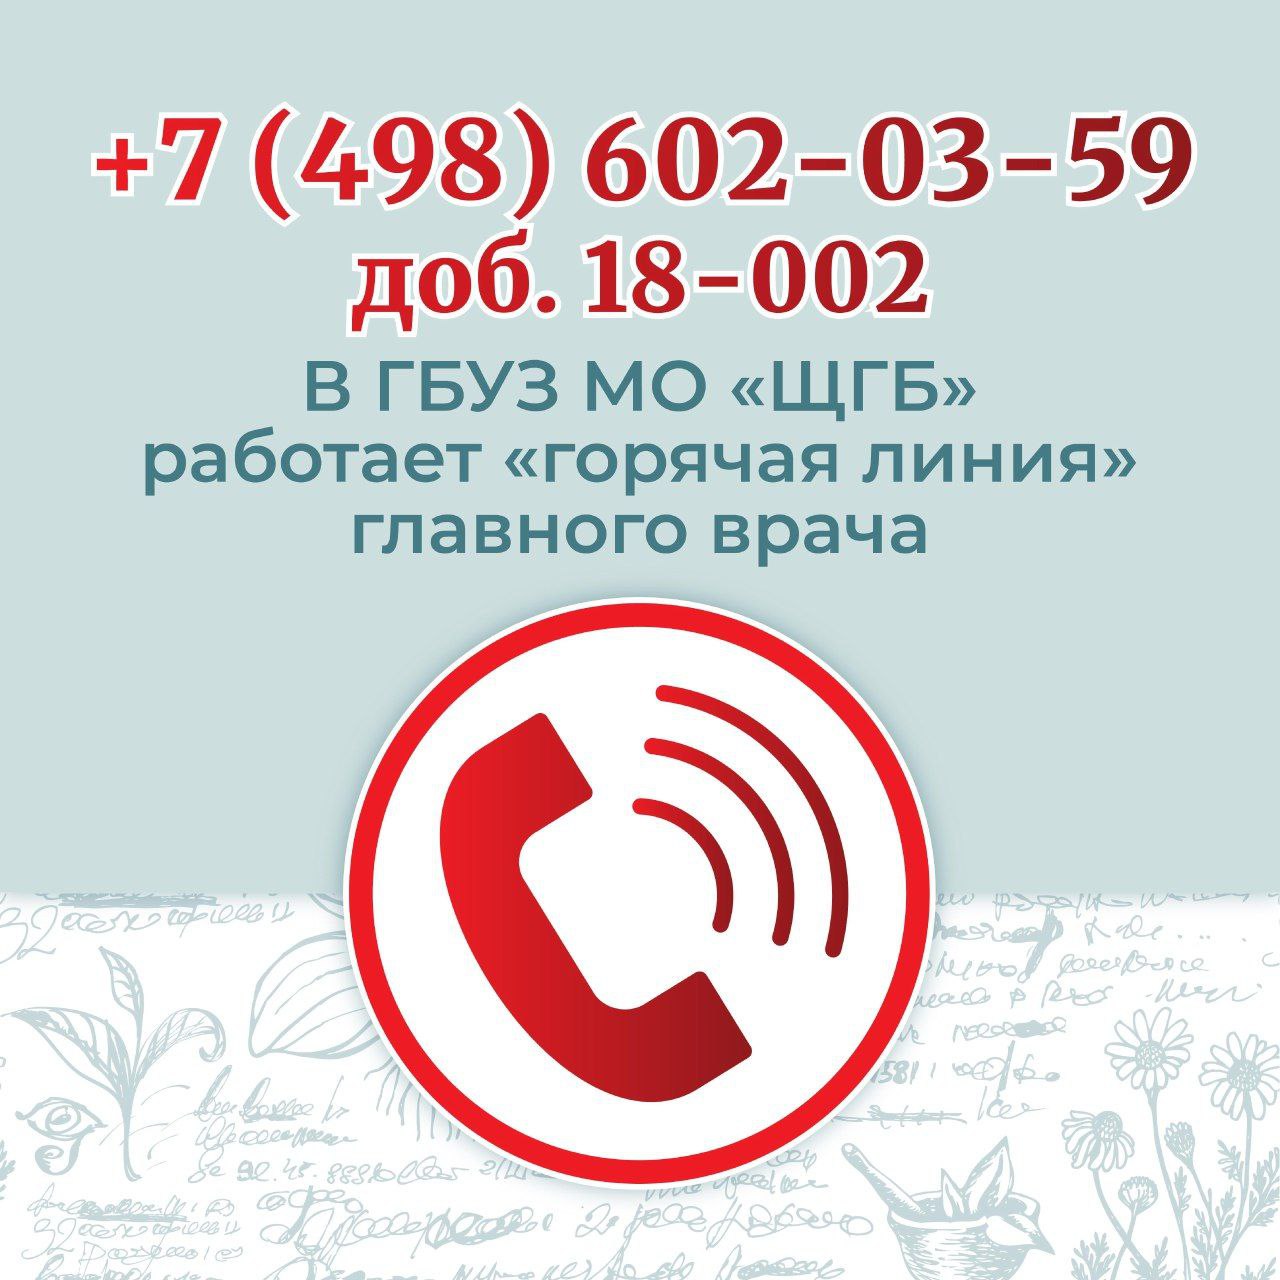 В Щелковской городской больнице работает «горячая линия» главного врача для решения возникающих у пациентов вопросов в кратчайшие сроки: ☎️ +7 (498) 602-03-59, доб. 18-002